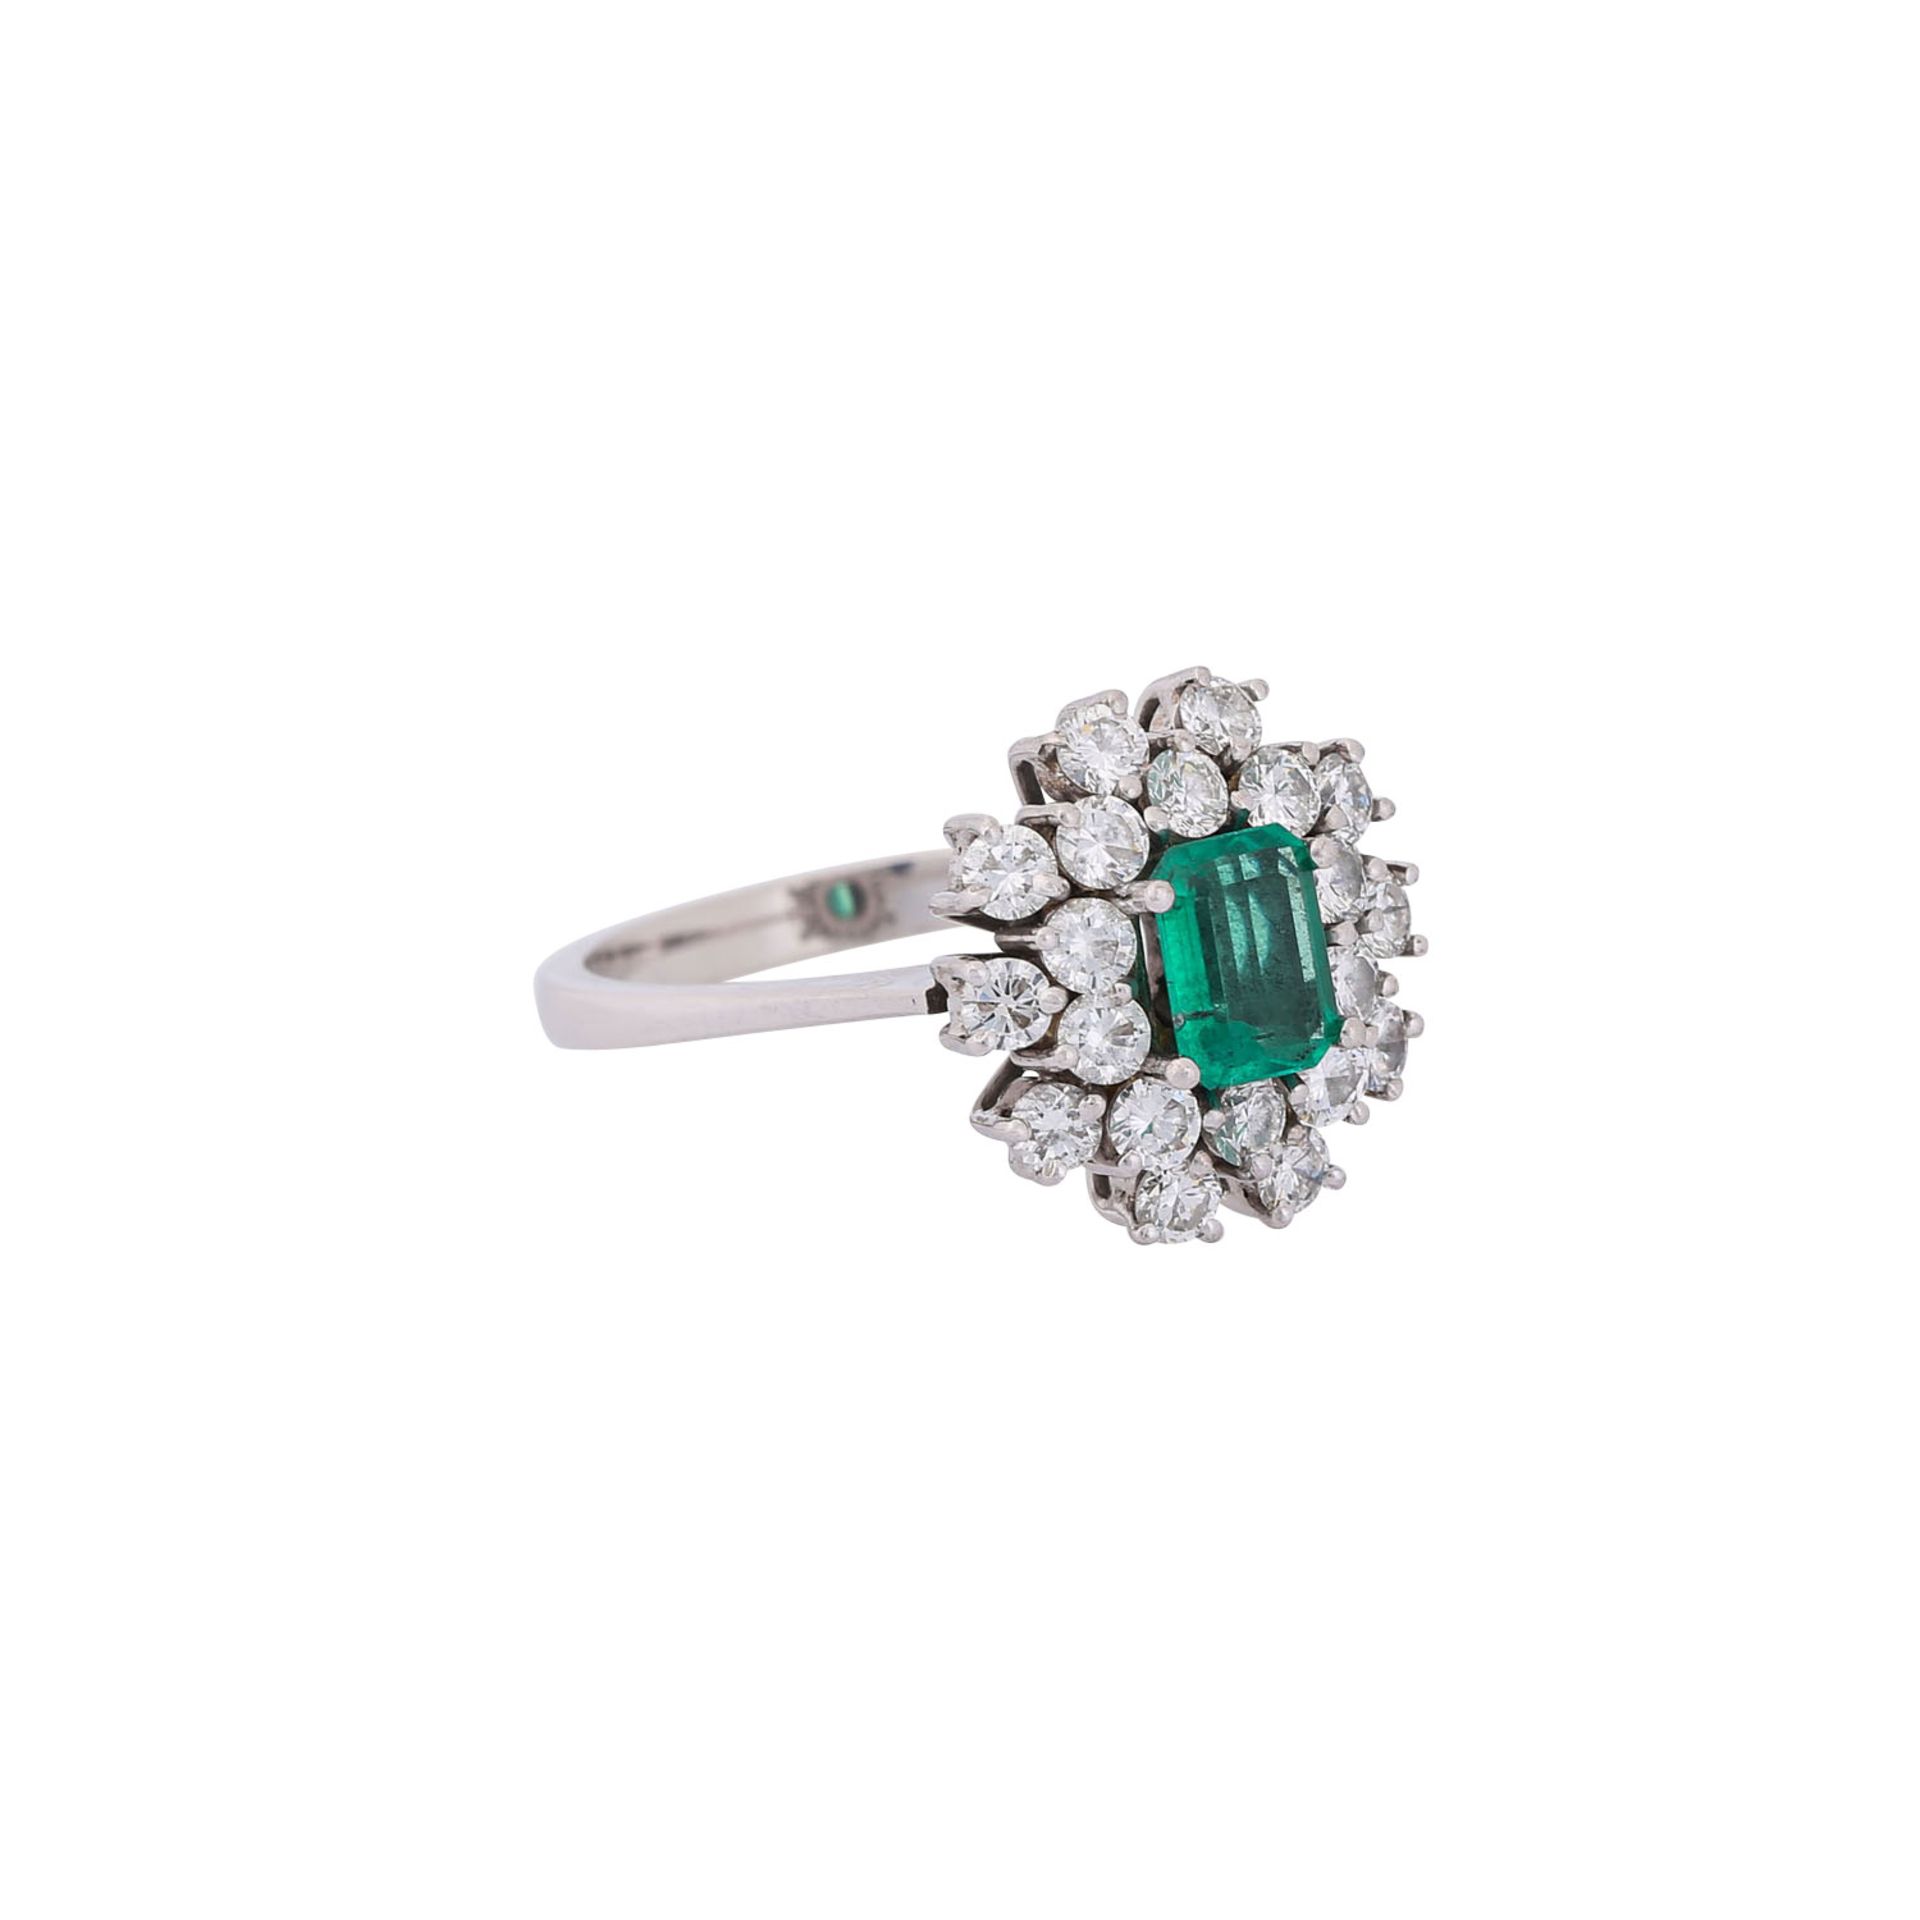 Ring mit Smaragd ca. 0,56 ct umgeben von Brillanten zus. ca. 0,9 ct,